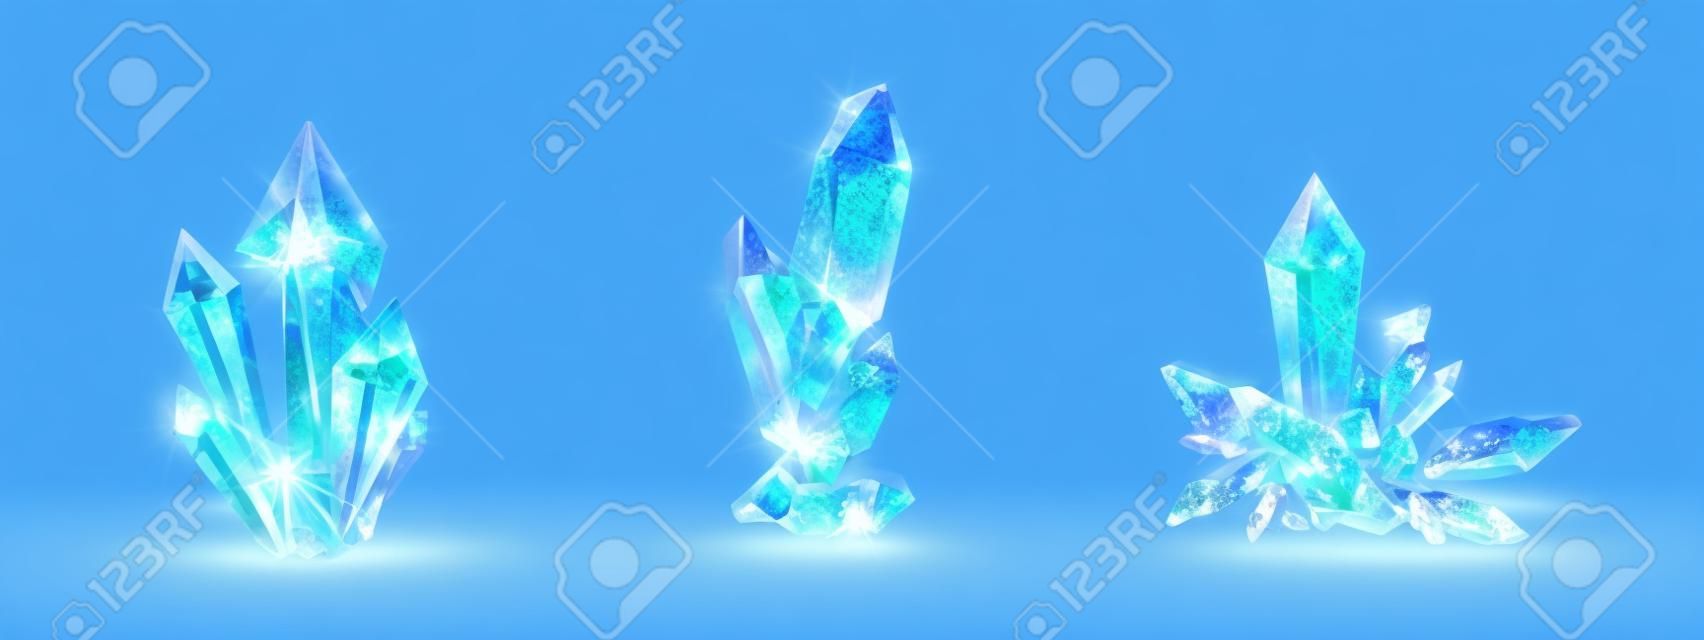 Racimos de cristal con aura de luz azul brillante, cuarzo o mineral cristalino. Estalagmitas de rocas brillantes sin facetar, joyas aisladas piedras preciosas o semipreciosas, conjunto vectorial 3d realista